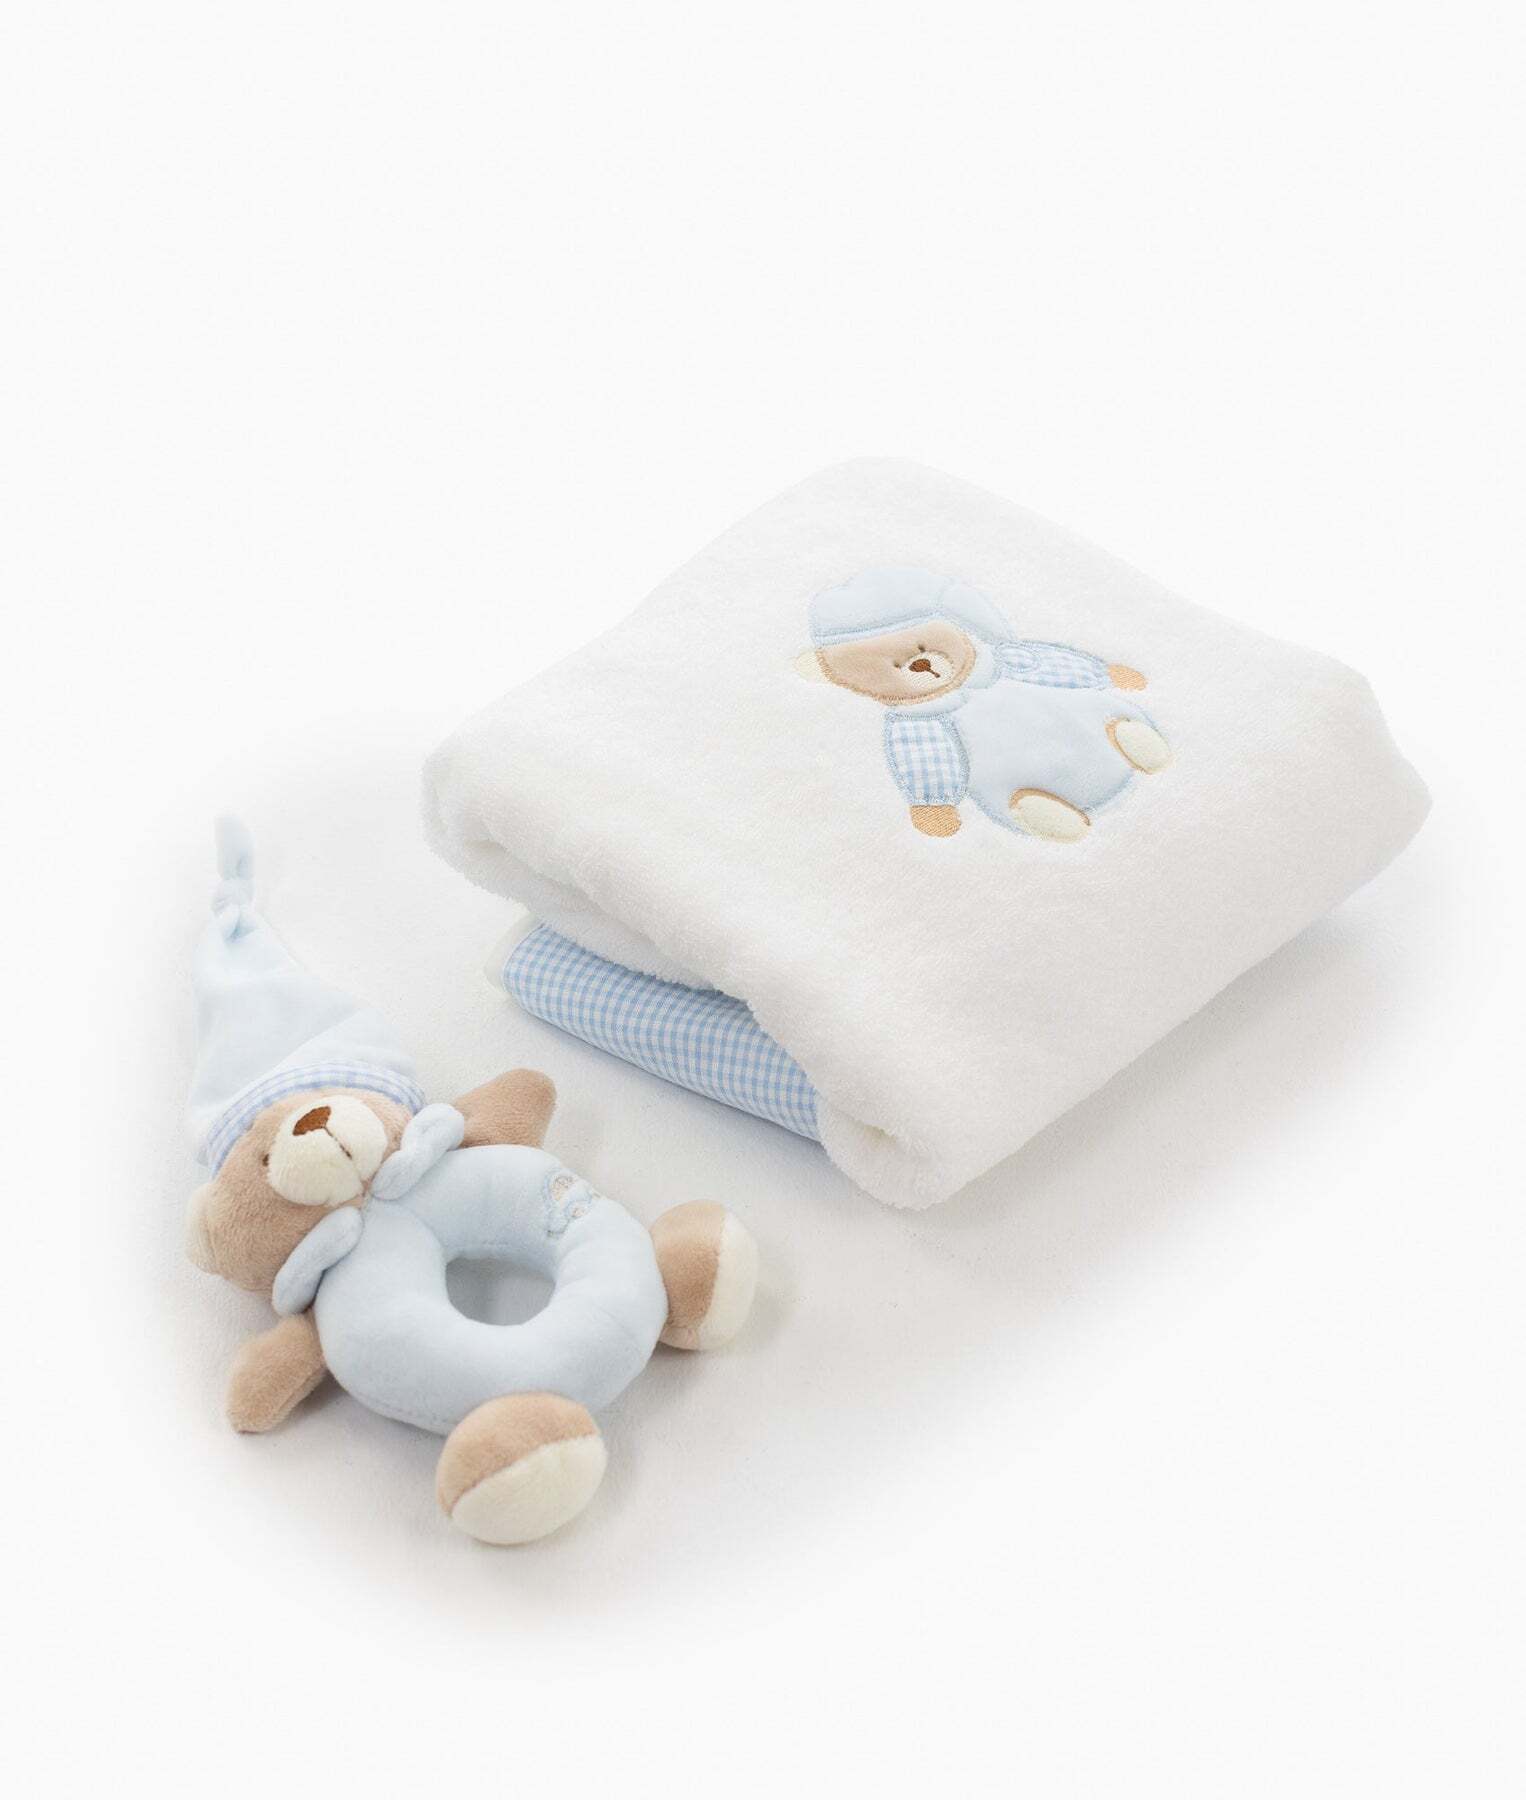 bear-towel-rattle-set-blue-999_1800x1800